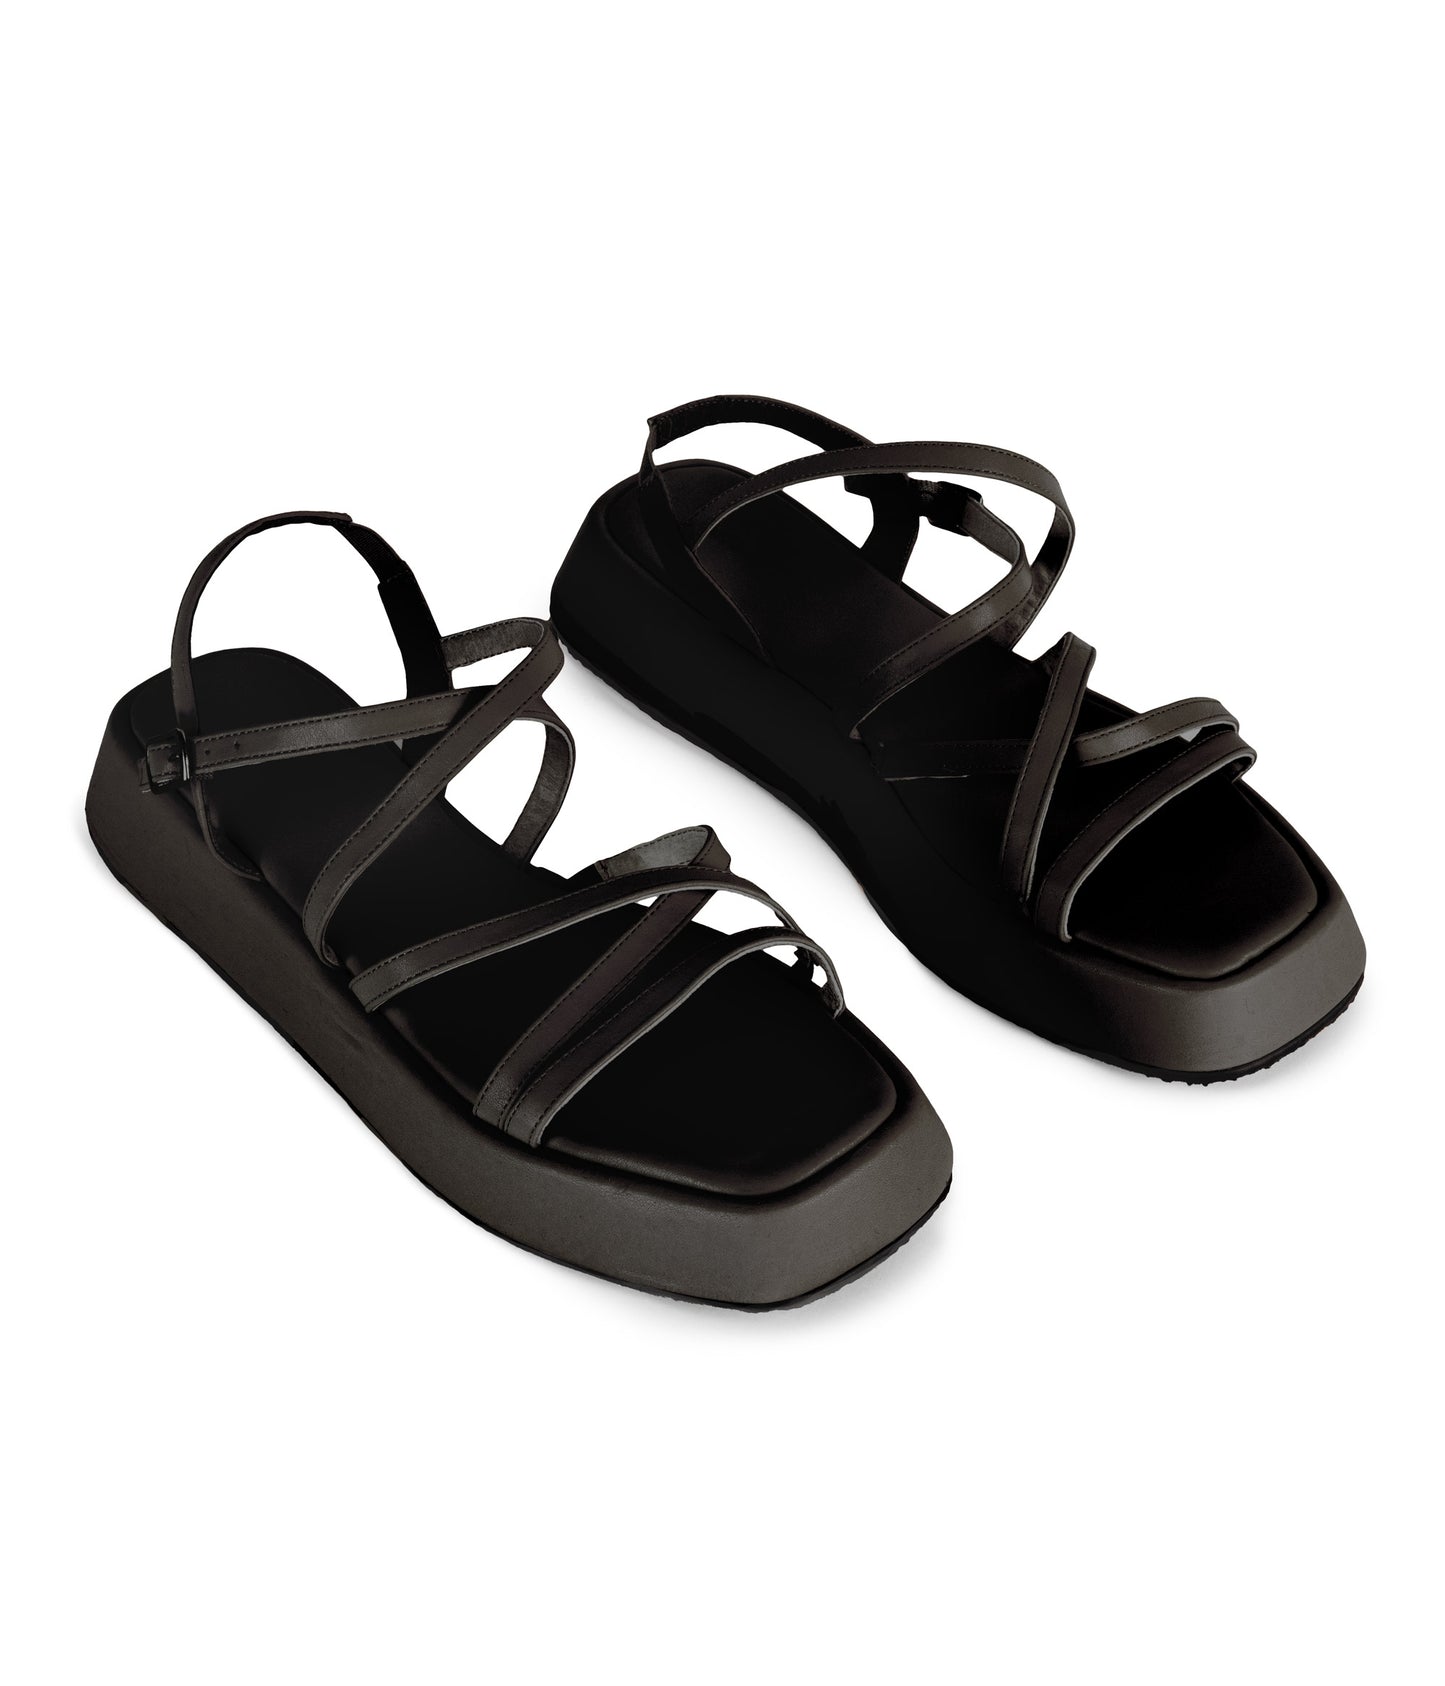 variant:: noir -- niccol shoe noir